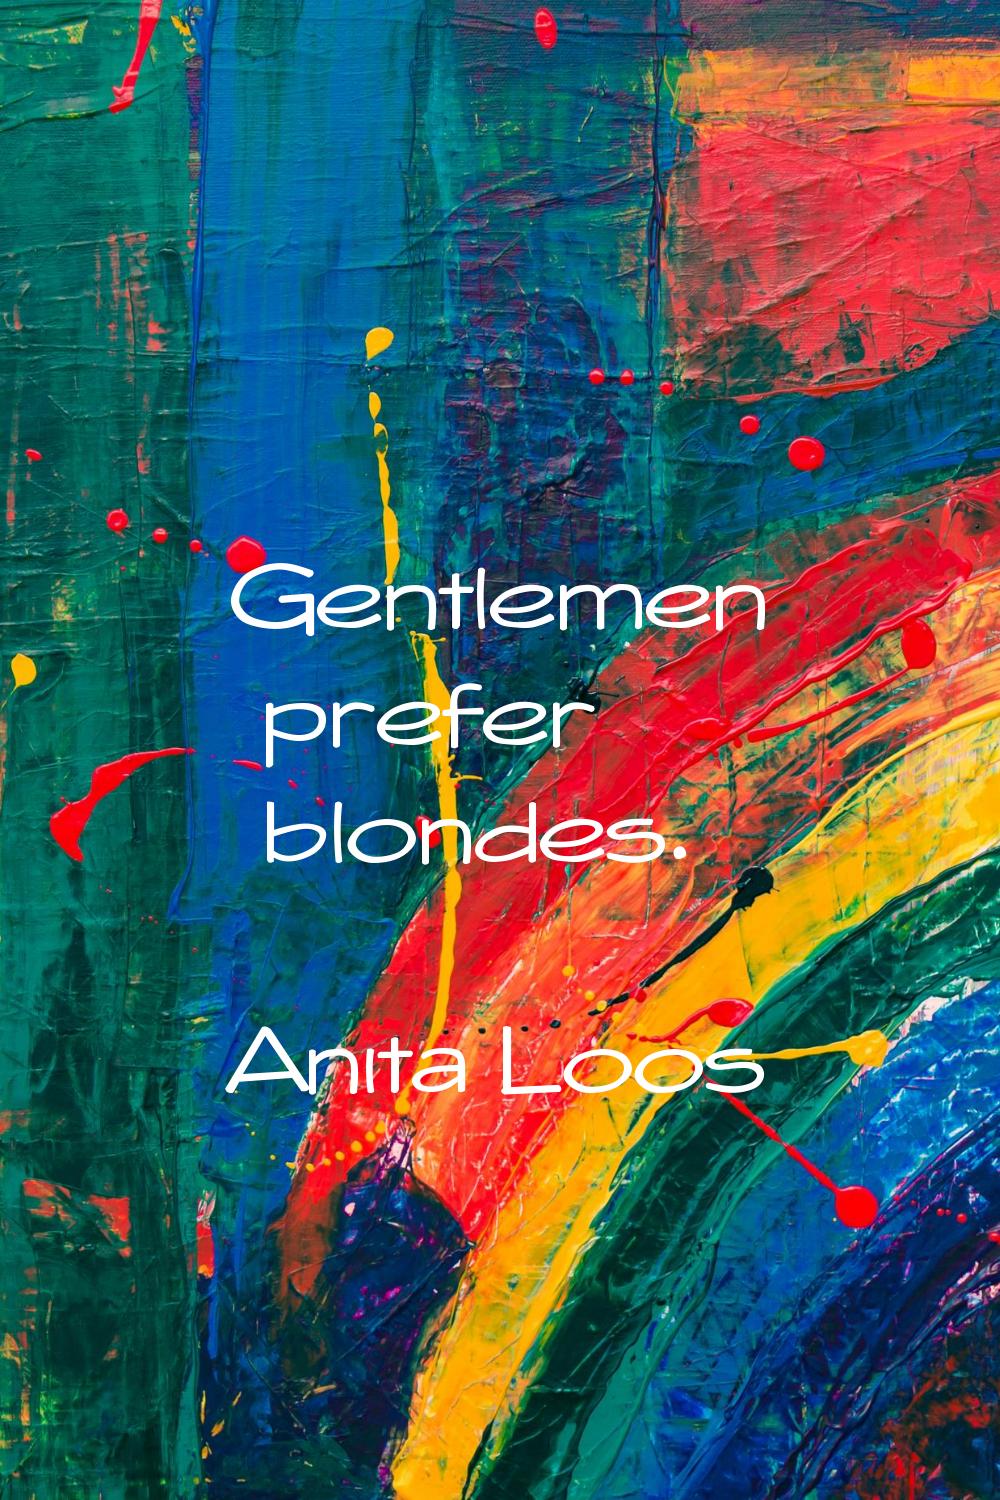 Gentlemen prefer blondes.